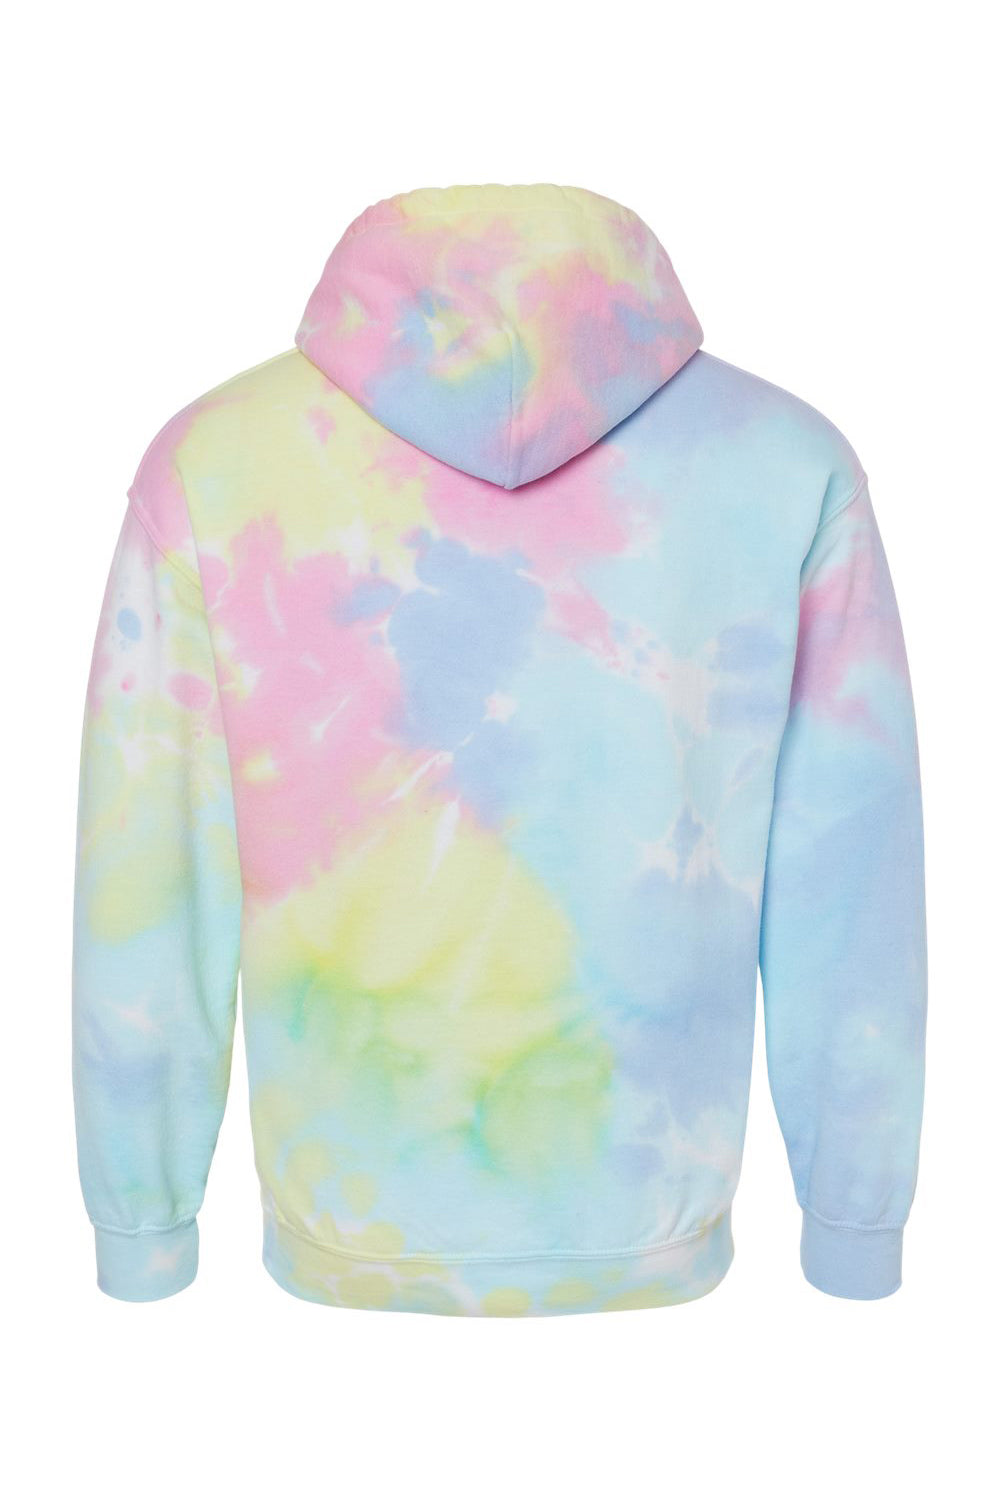 Dyenomite 680VR Mens Blended Tie Dyed Hooded Sweatshirt Hoodie Pastel Rainbow Flat Back